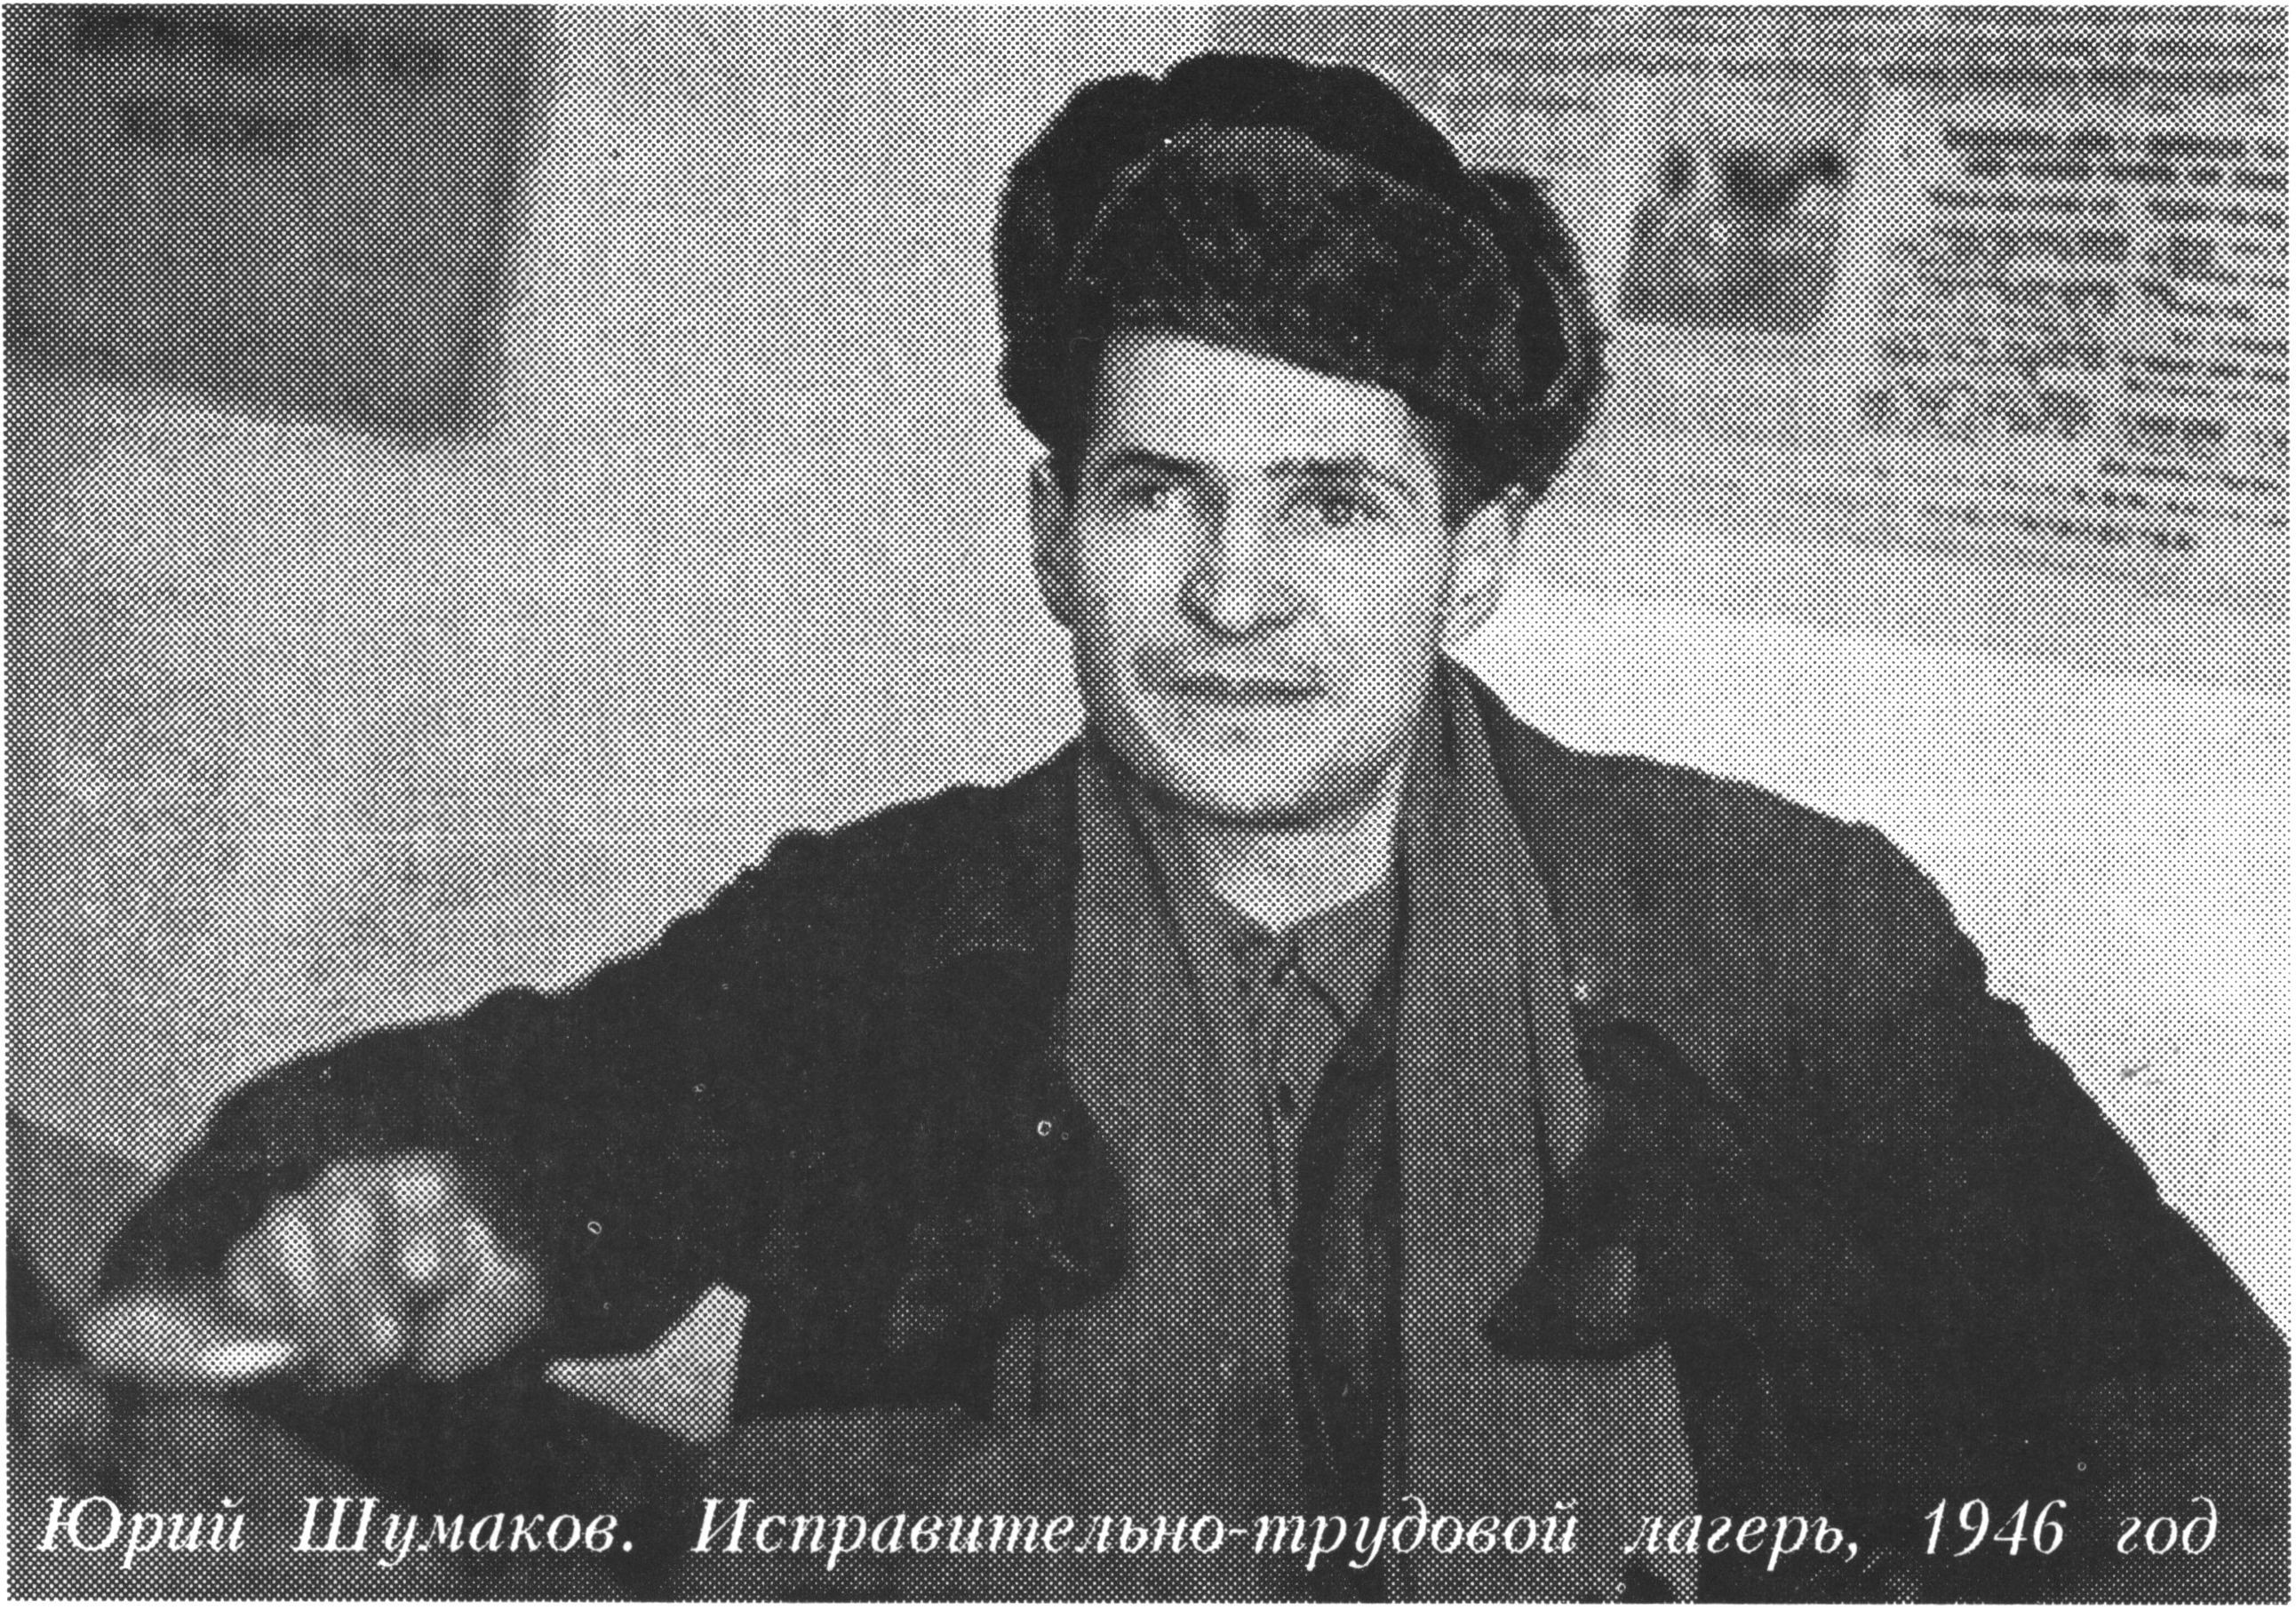 Юрий Шумаков. В архиве автора